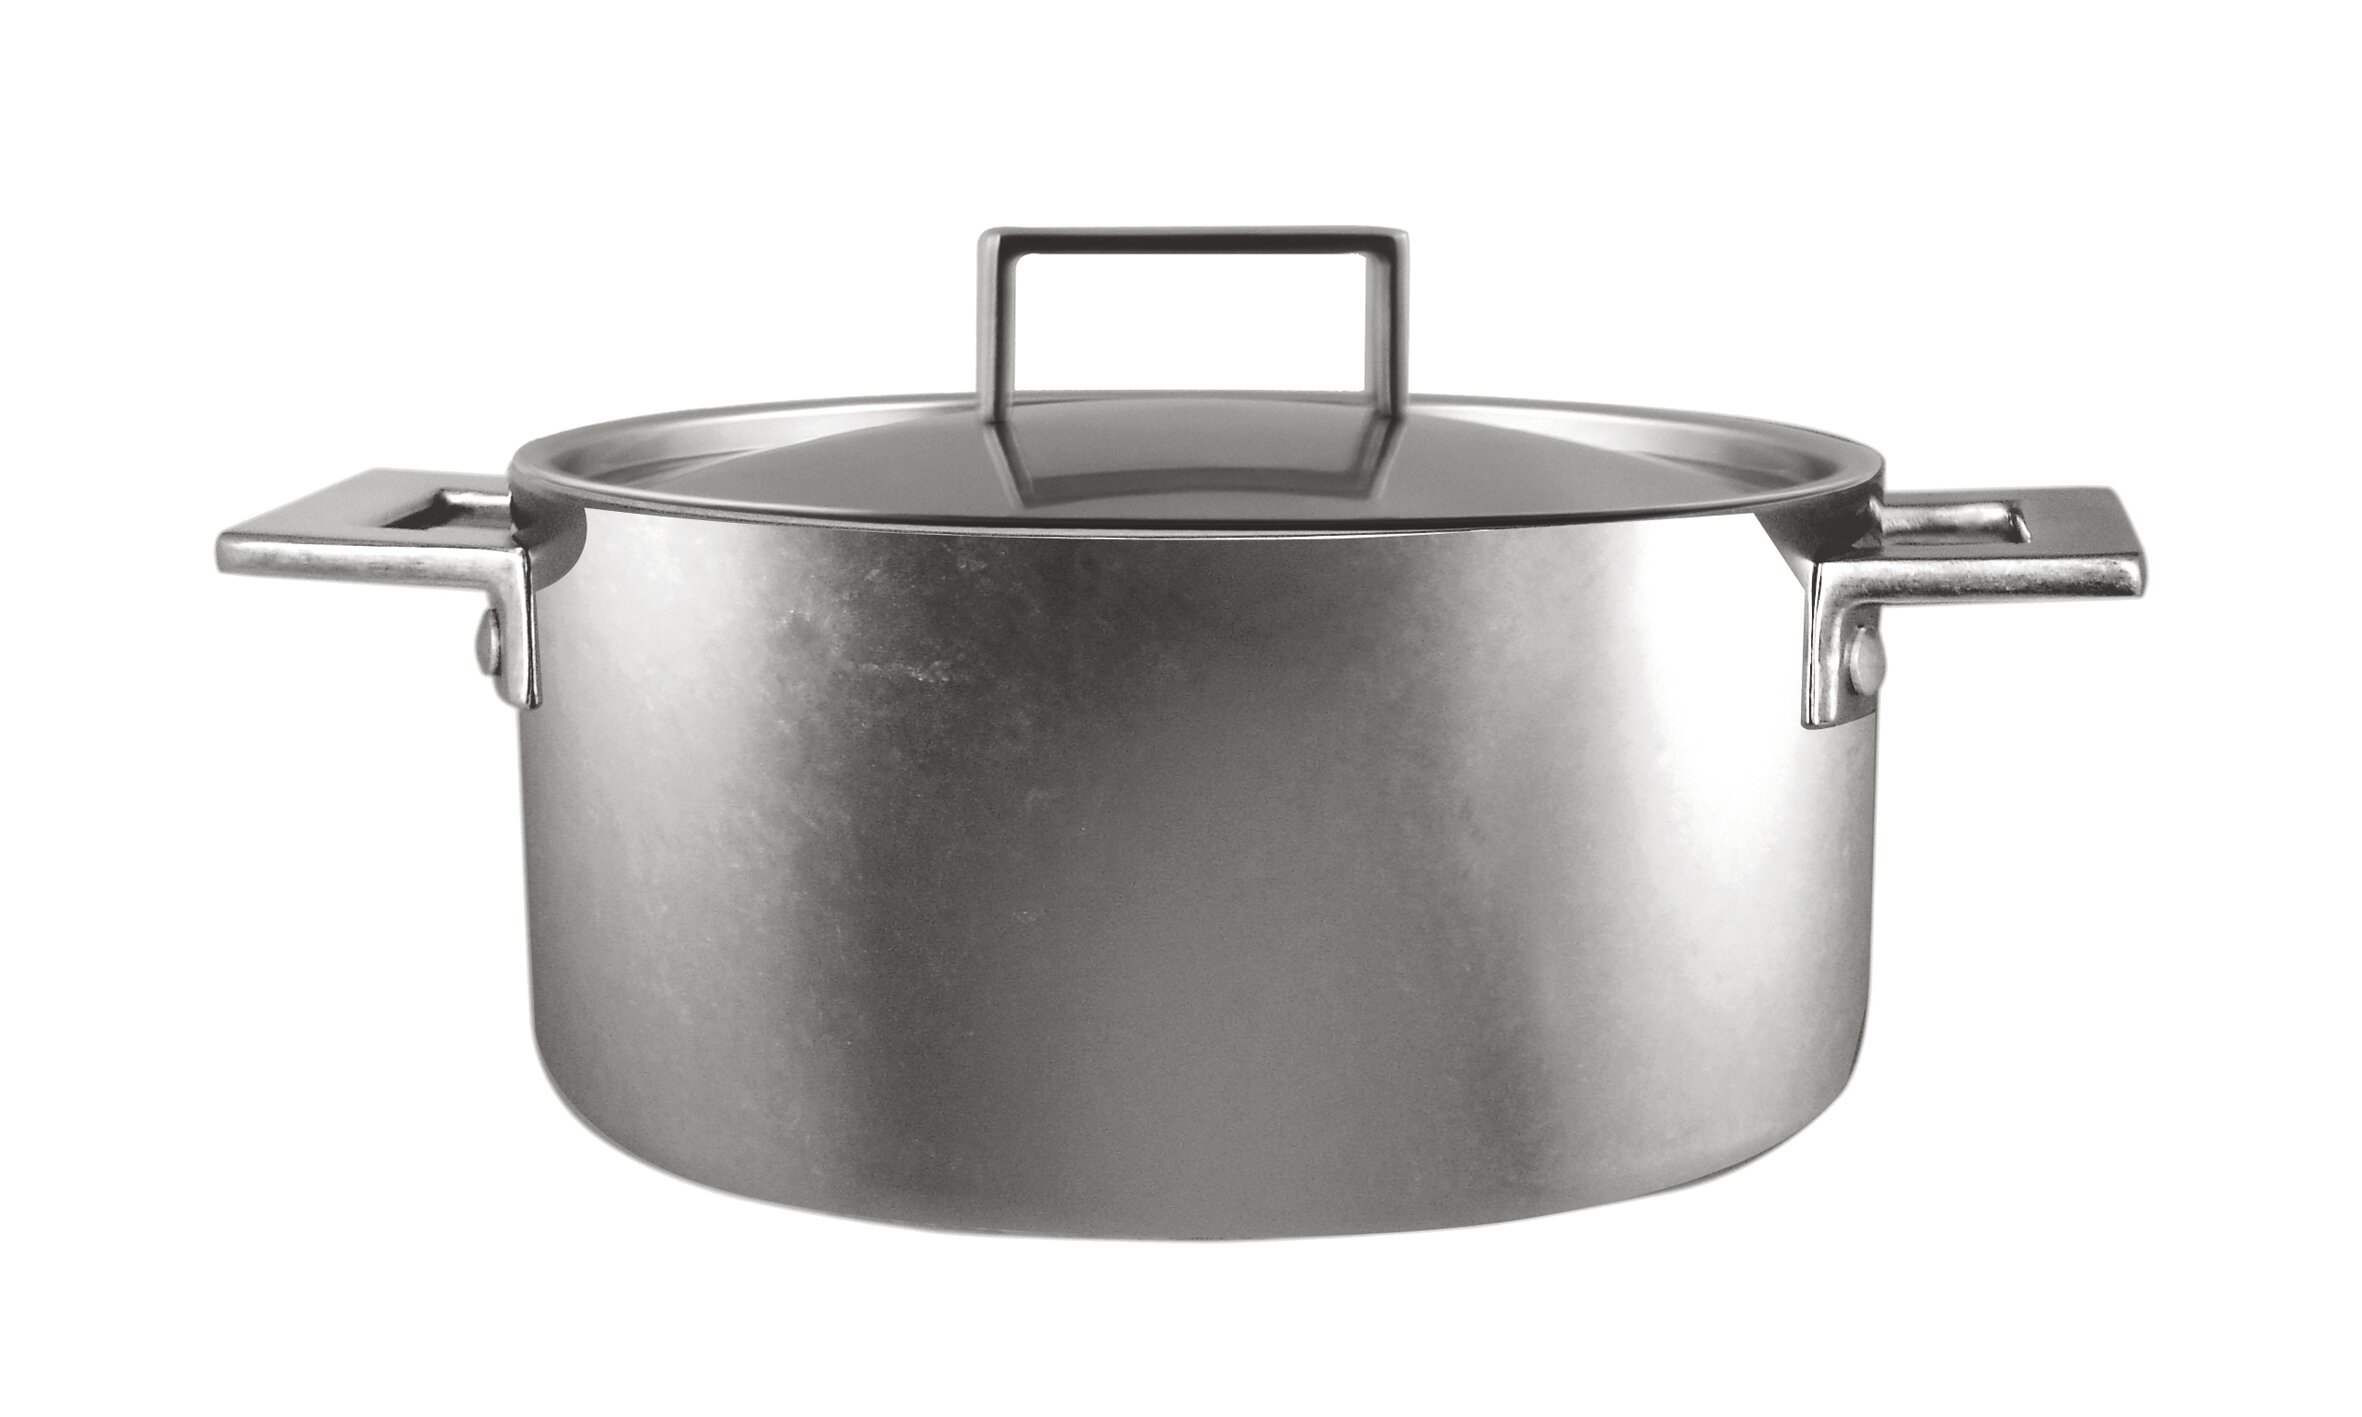 https://assets.wfcdn.com/im/31611413/compr-r85/4703/47038926/mepra-attiva-casserole-2-hand-pewter-soup-pot-with-lid.jpg